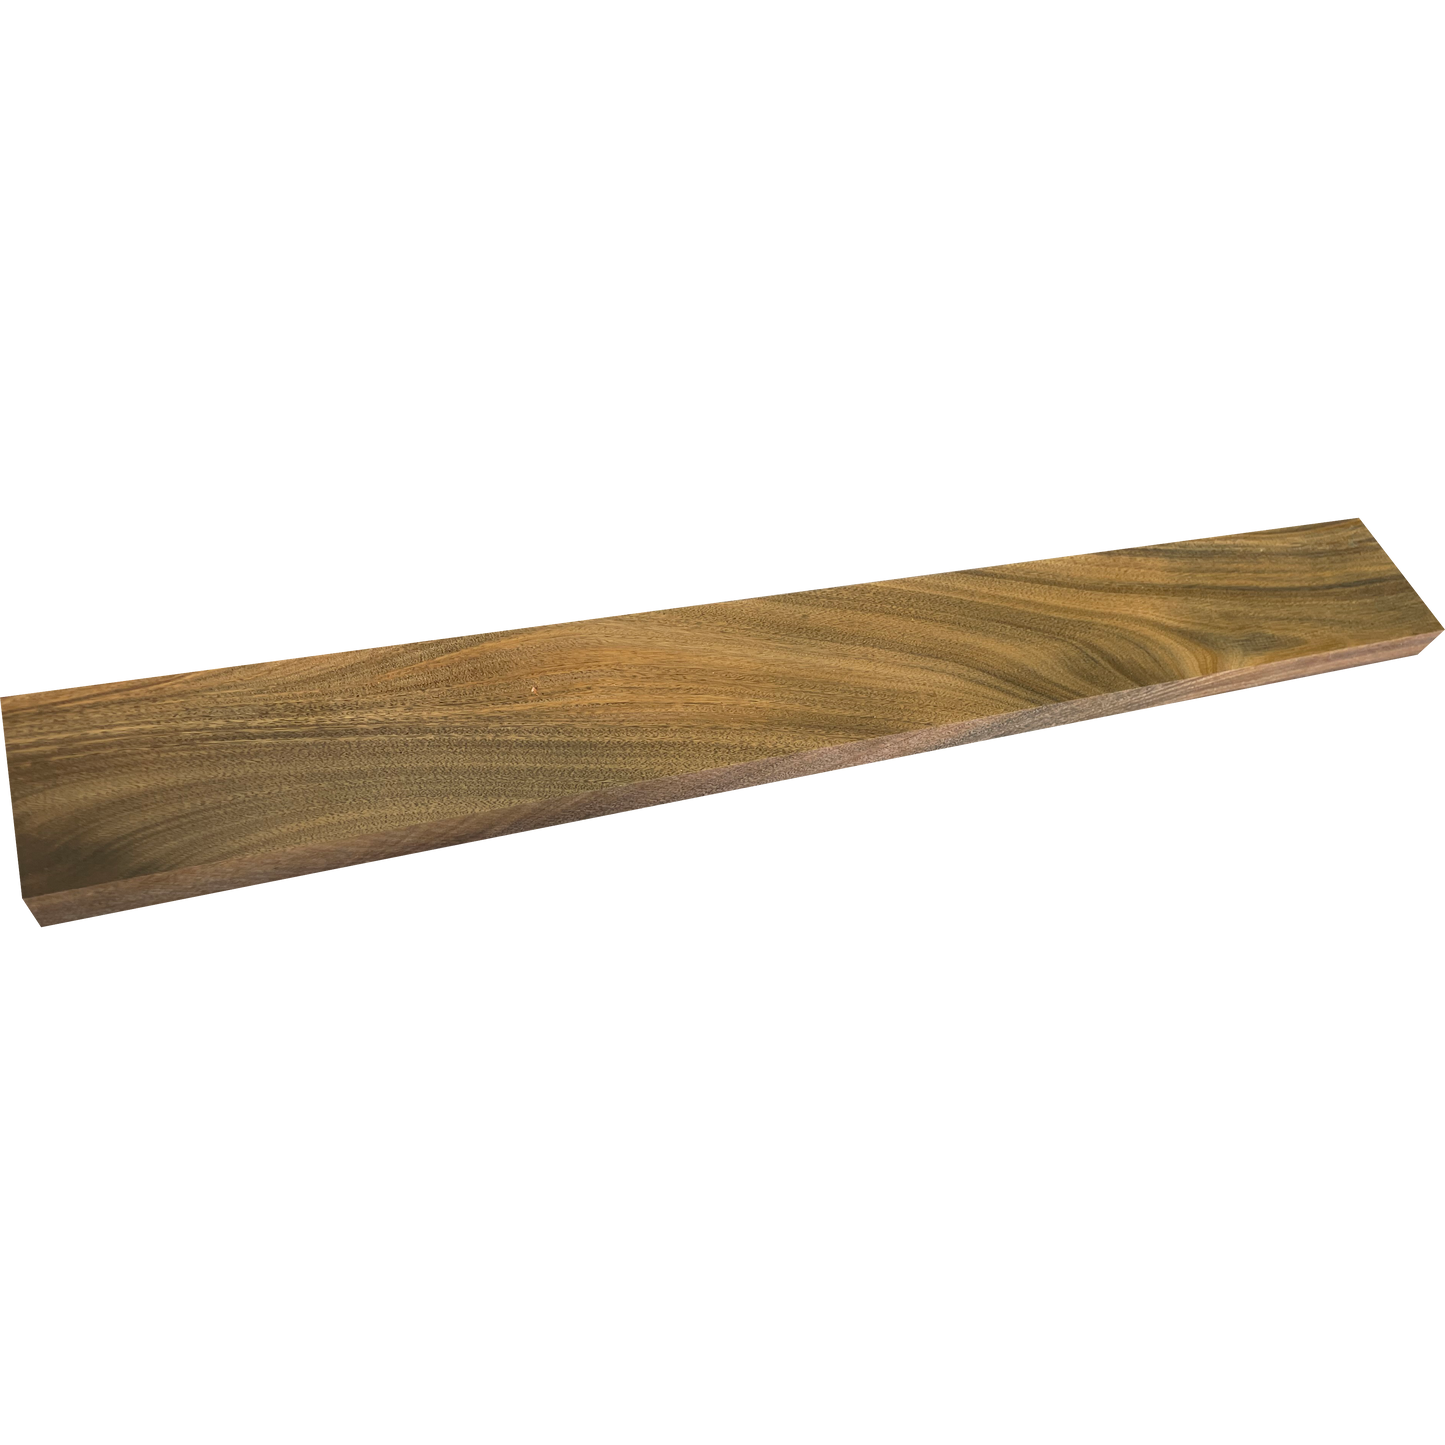 Verawood - Dimensional Lumber